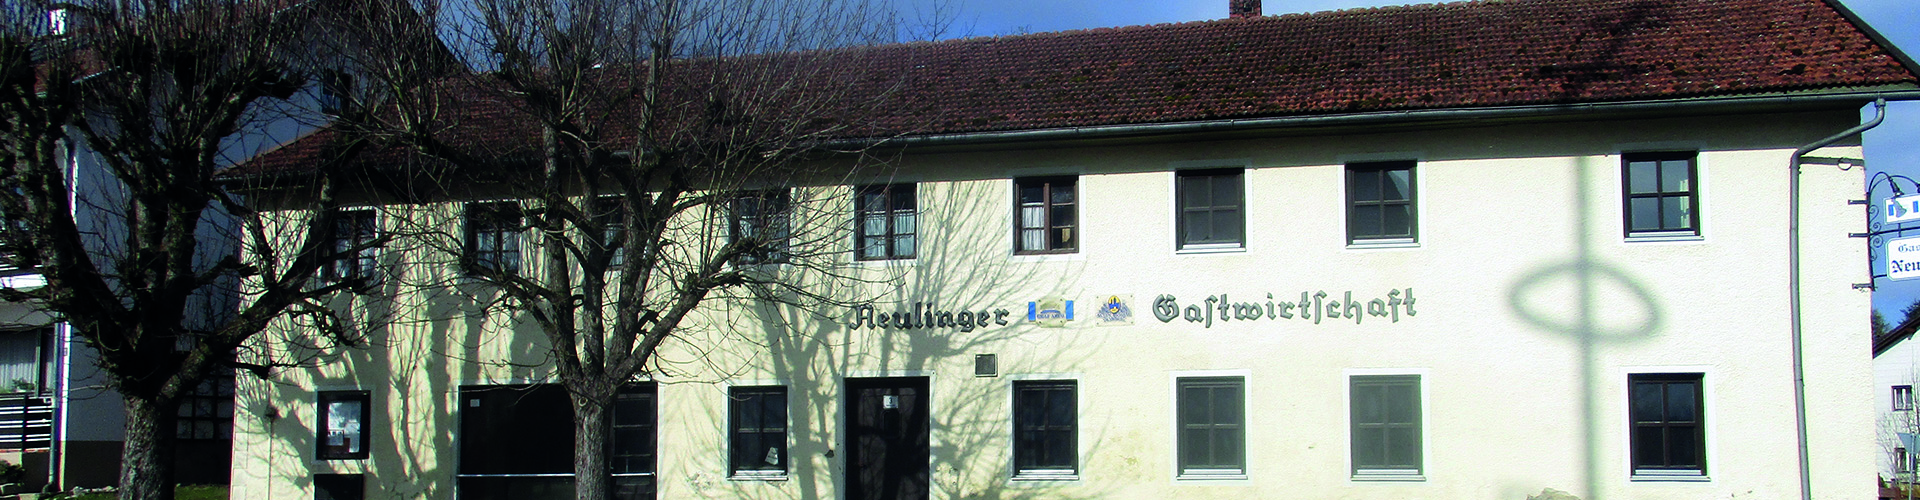 Gasthaus Seifriedswörth, 2017